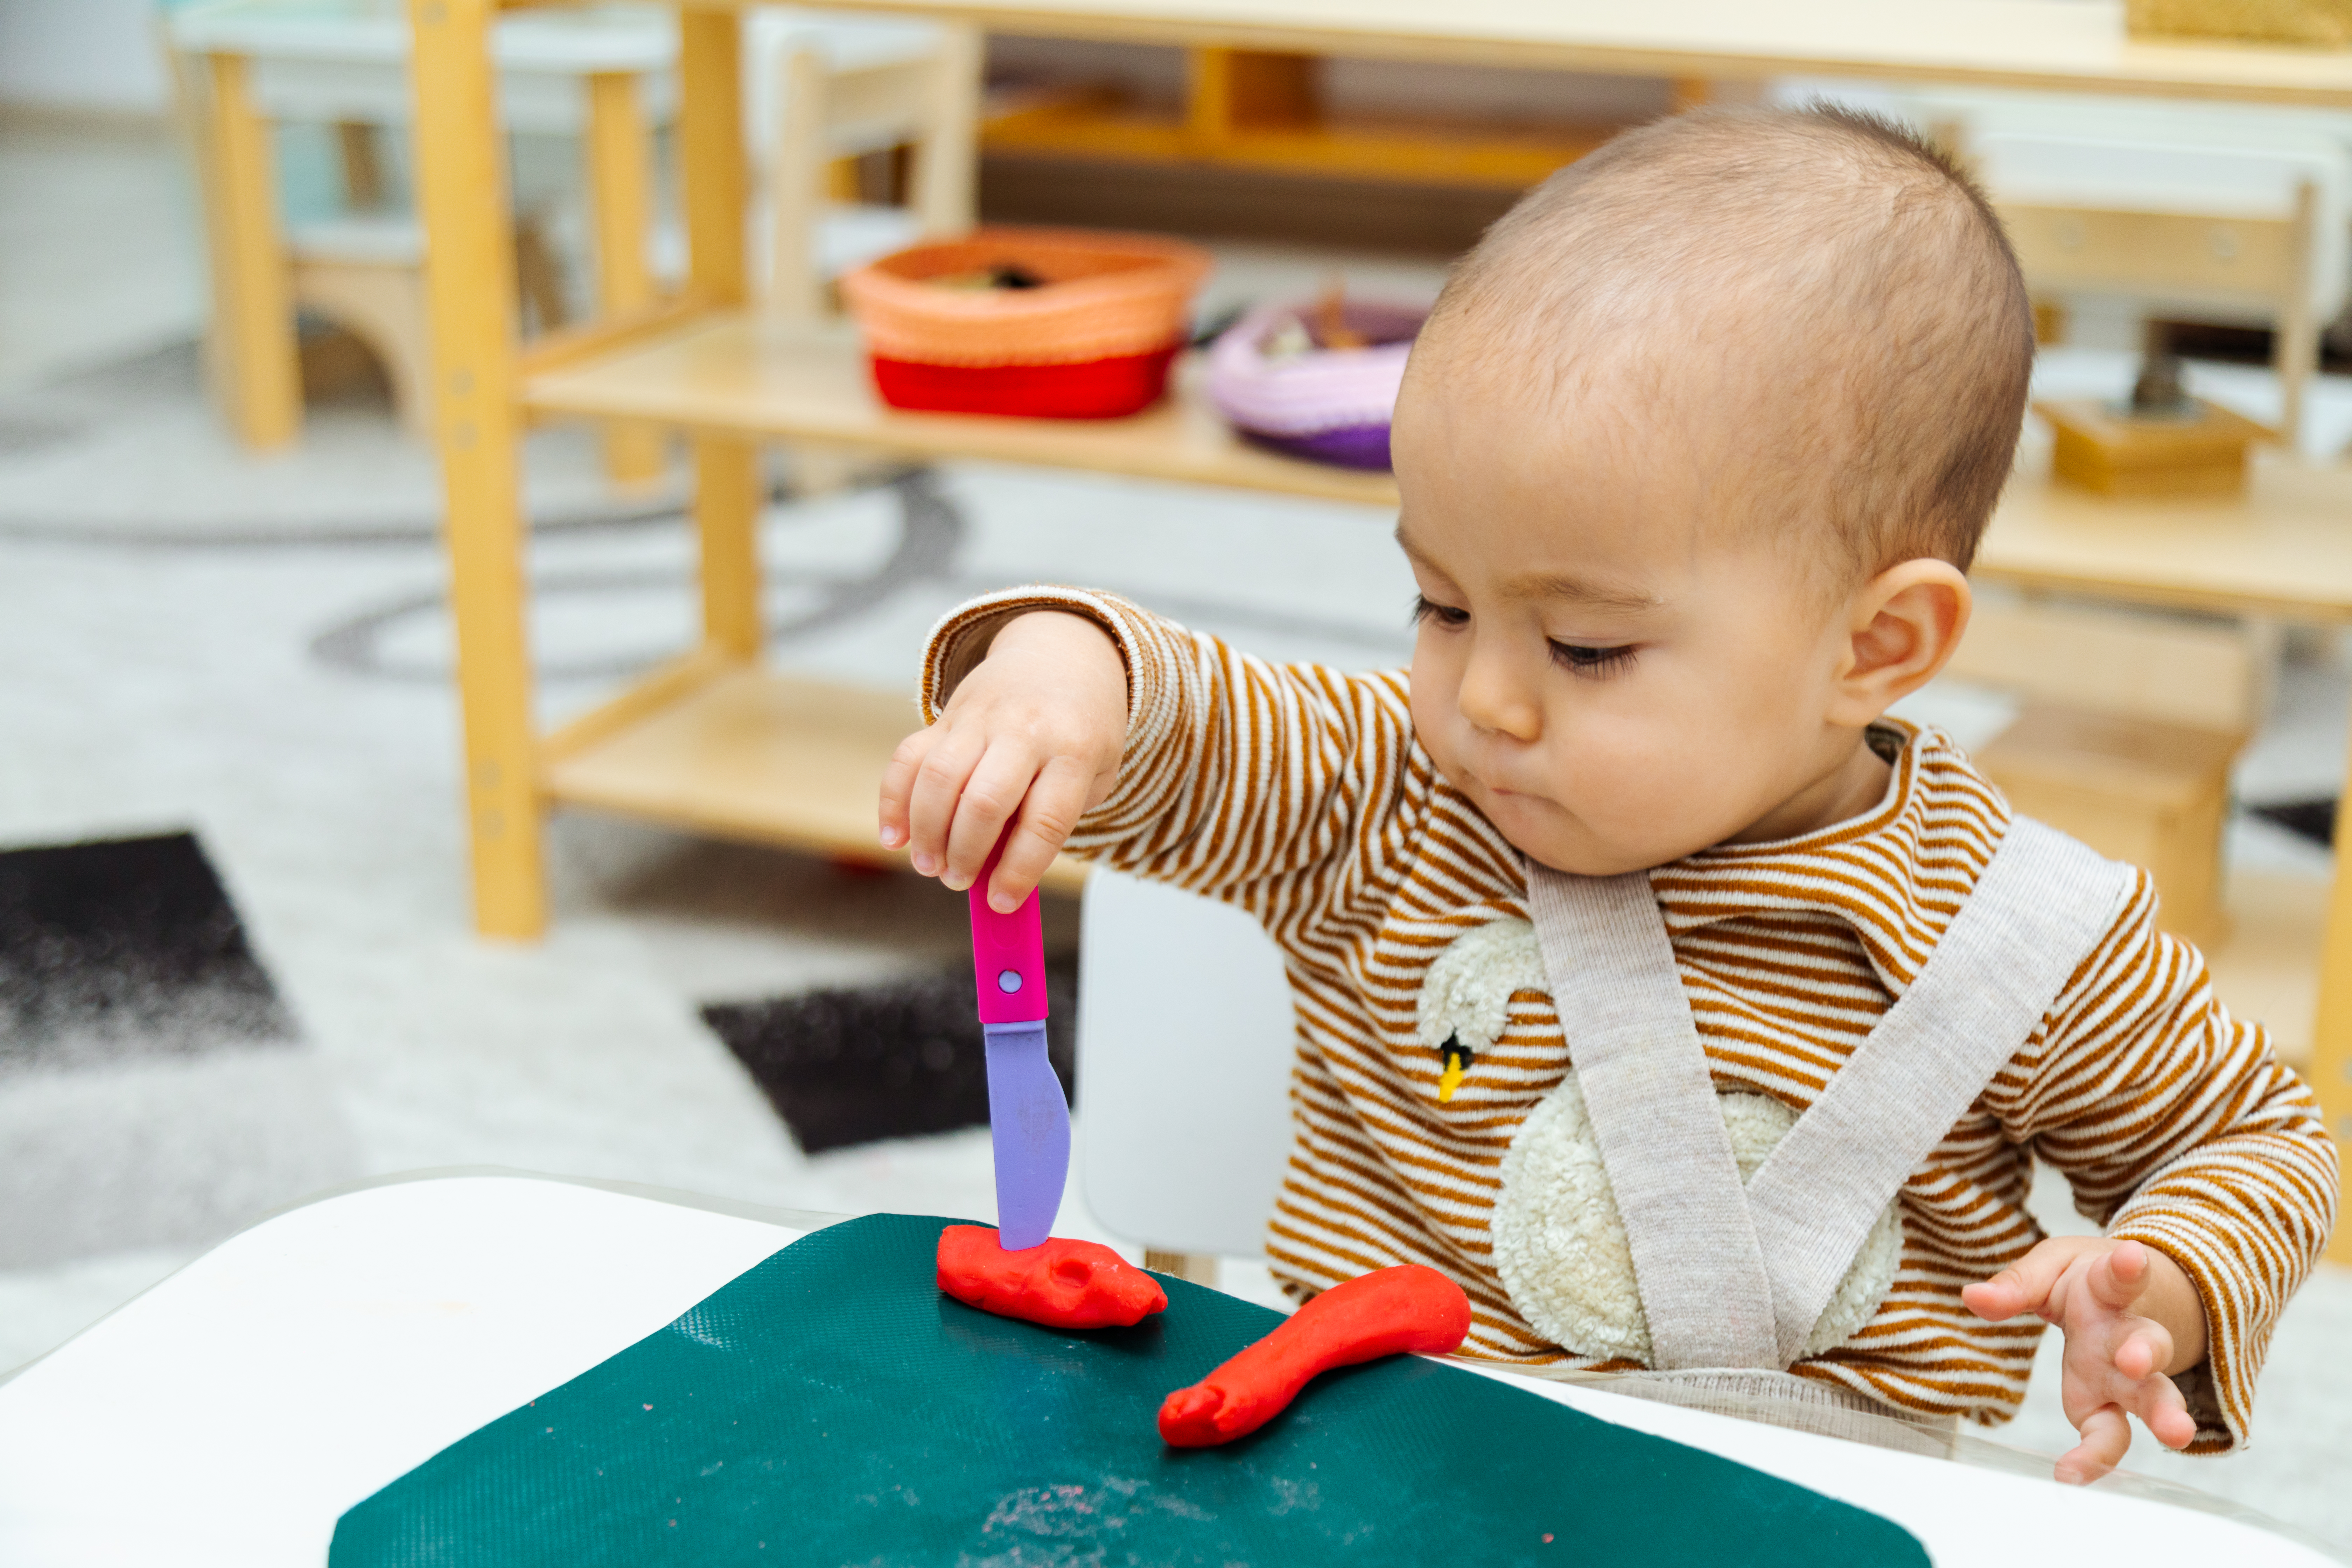 making playdough is a fun indoor activities for children